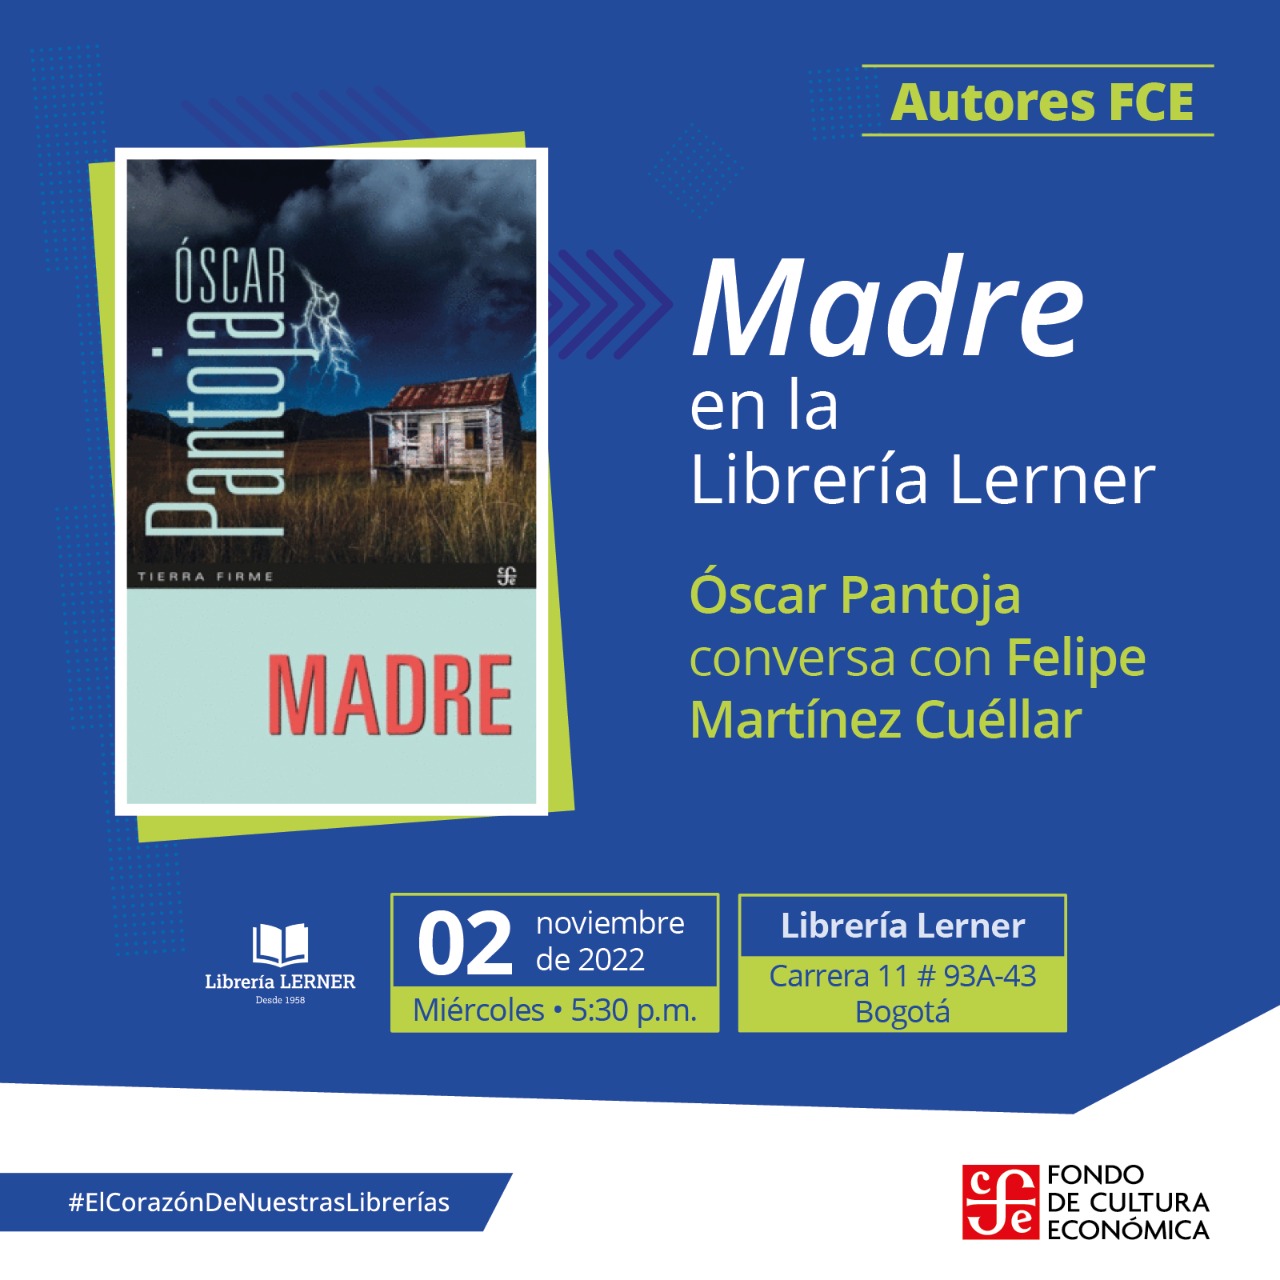 Madre de Oscar Pantoja se presenta en la Librería Lerner de la calle 93 el 2 de noviembre de 2022 a las 5:30 p.m.